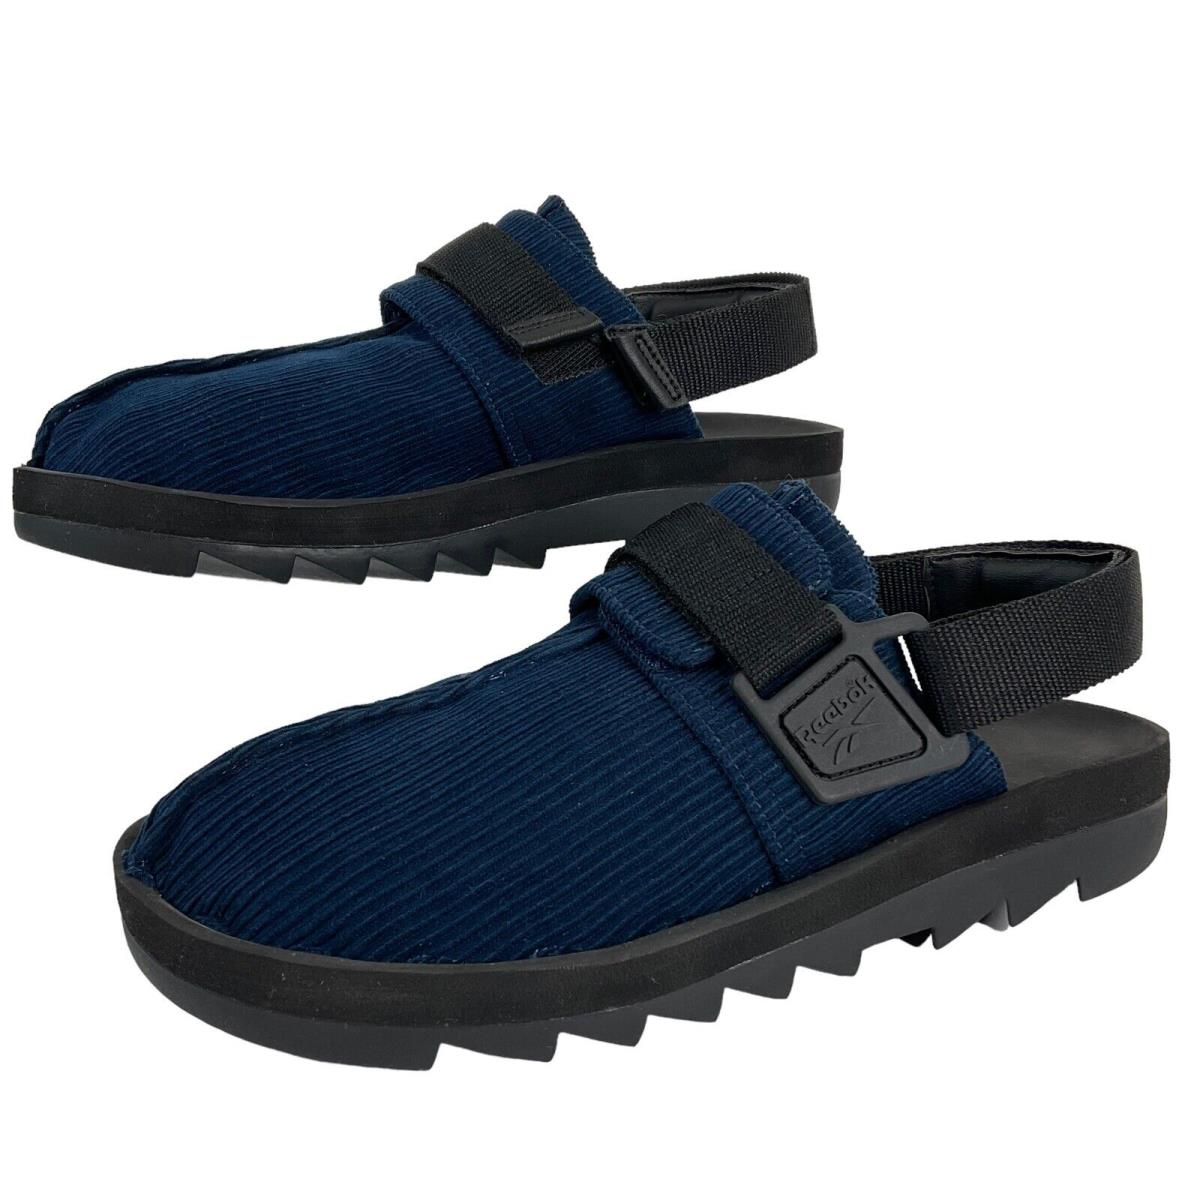 Reebok Shoes Mens Size 10 Casual Beatnik Comfort Sandals Blue Corduroy